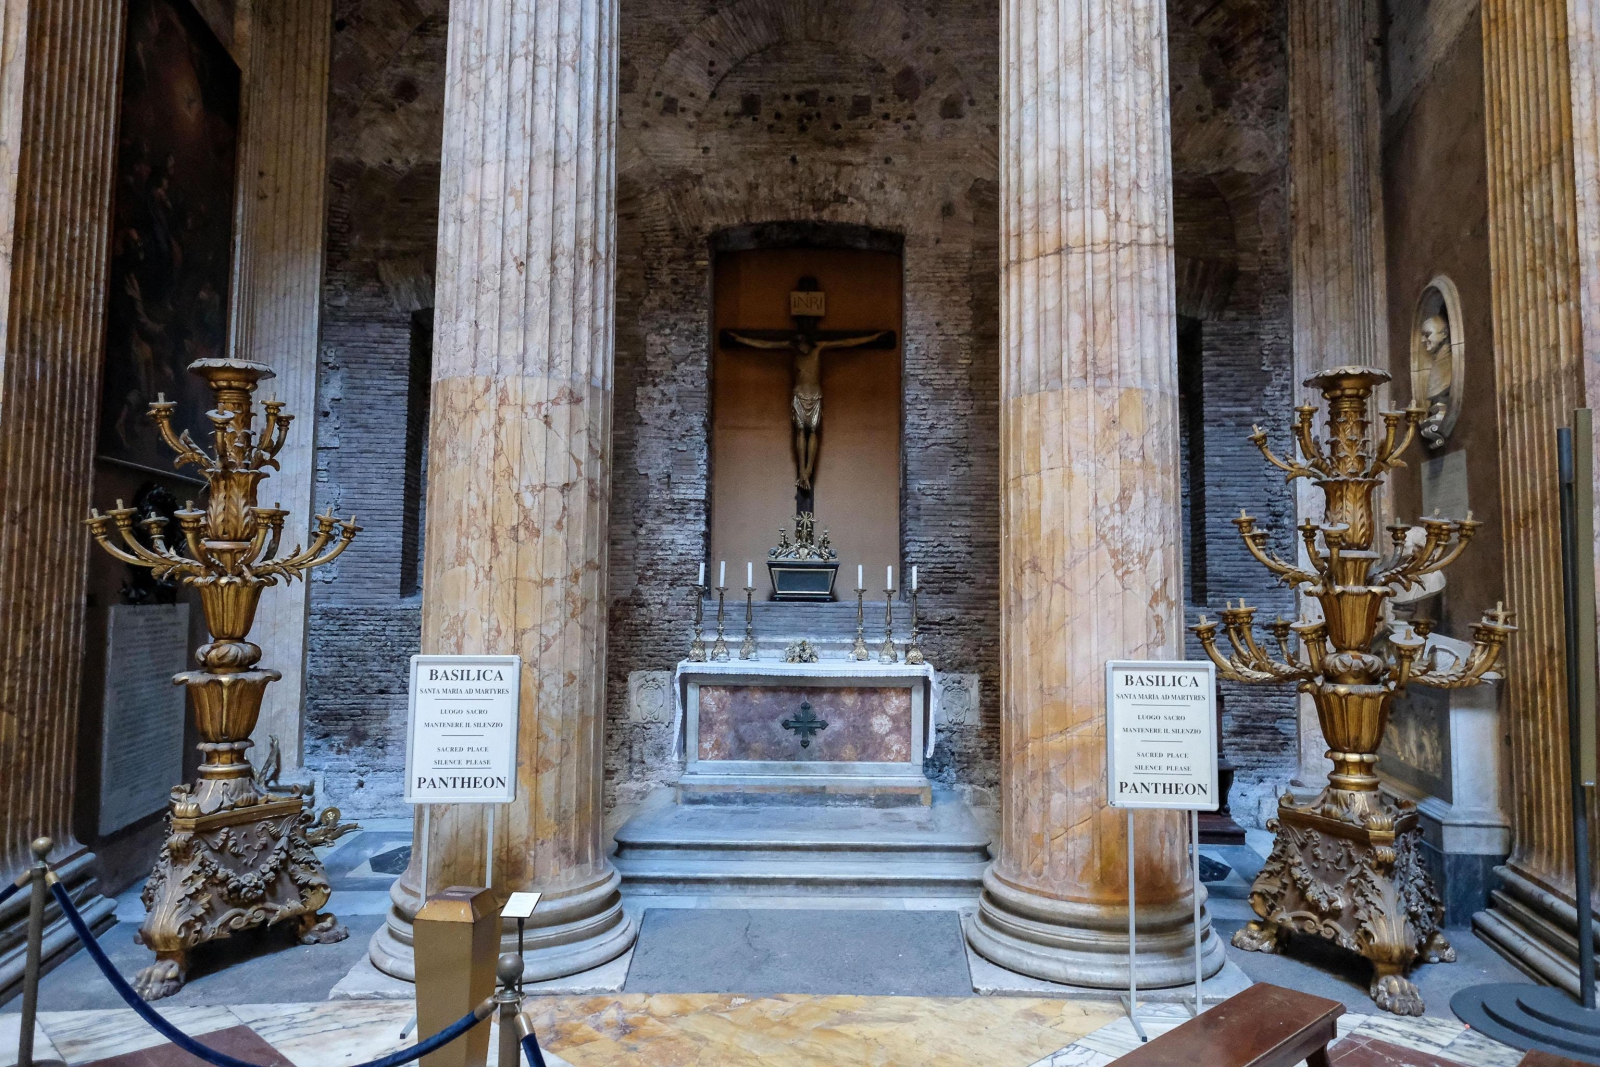 Dwa drewniane kandelabry z XVIII wieku zostały dziś połamane przez turystkę, Panteon, Rzym.